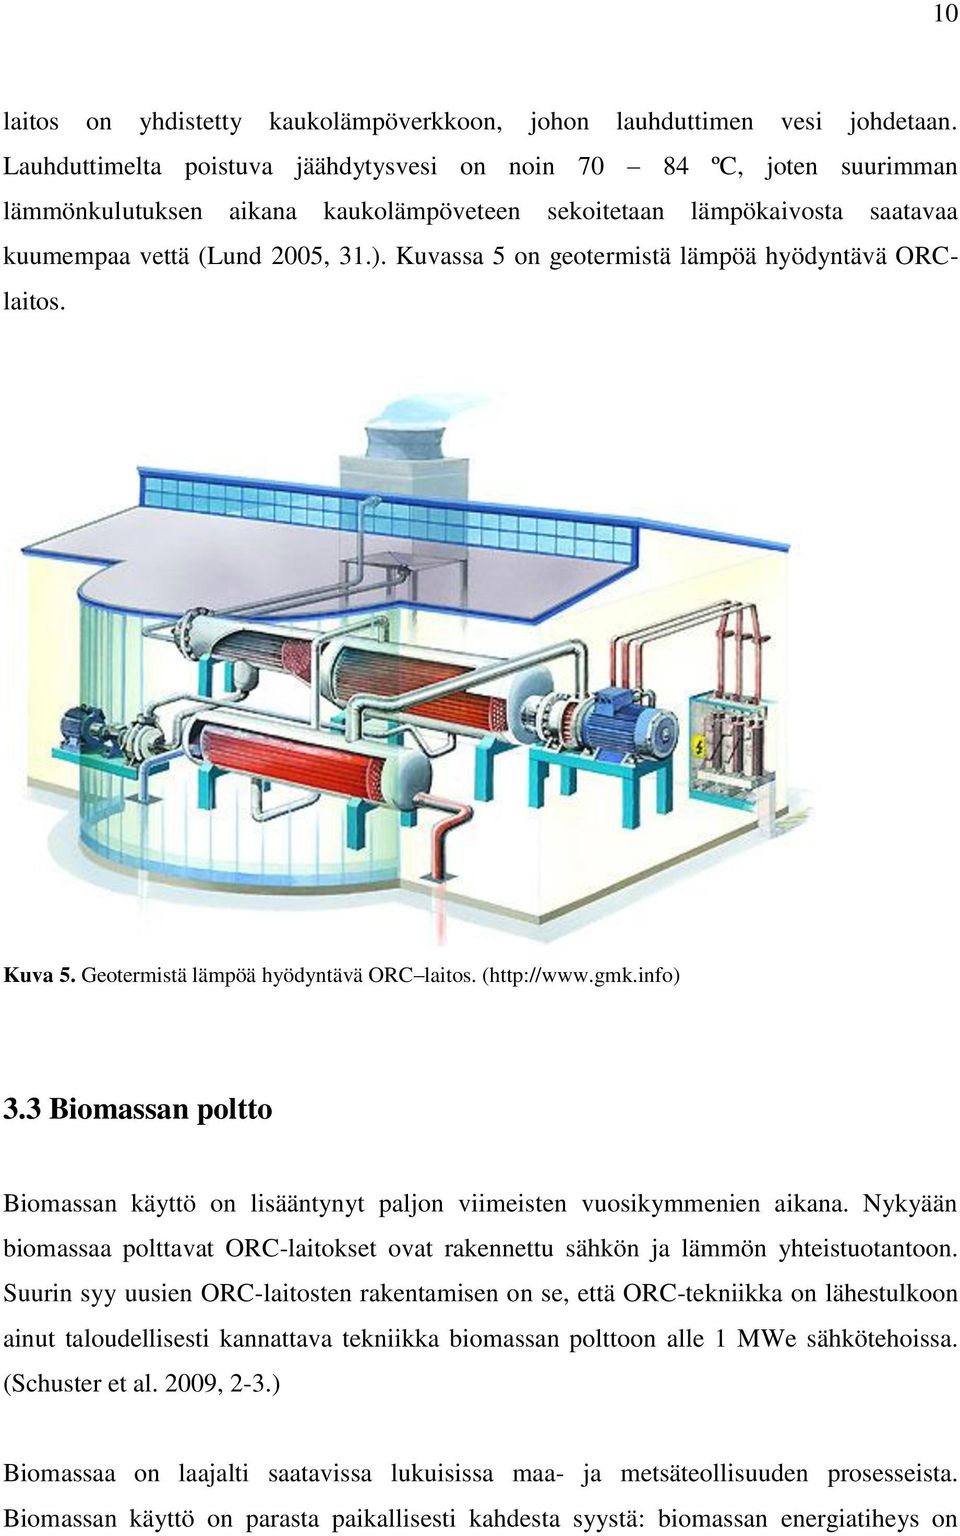 Kuvassa 5 on geotermistä lämpöä hyödyntävä ORClaitos. Kuva 5. Geotermistä lämpöä hyödyntävä ORC laitos. (http://www.gmk.info) 3.